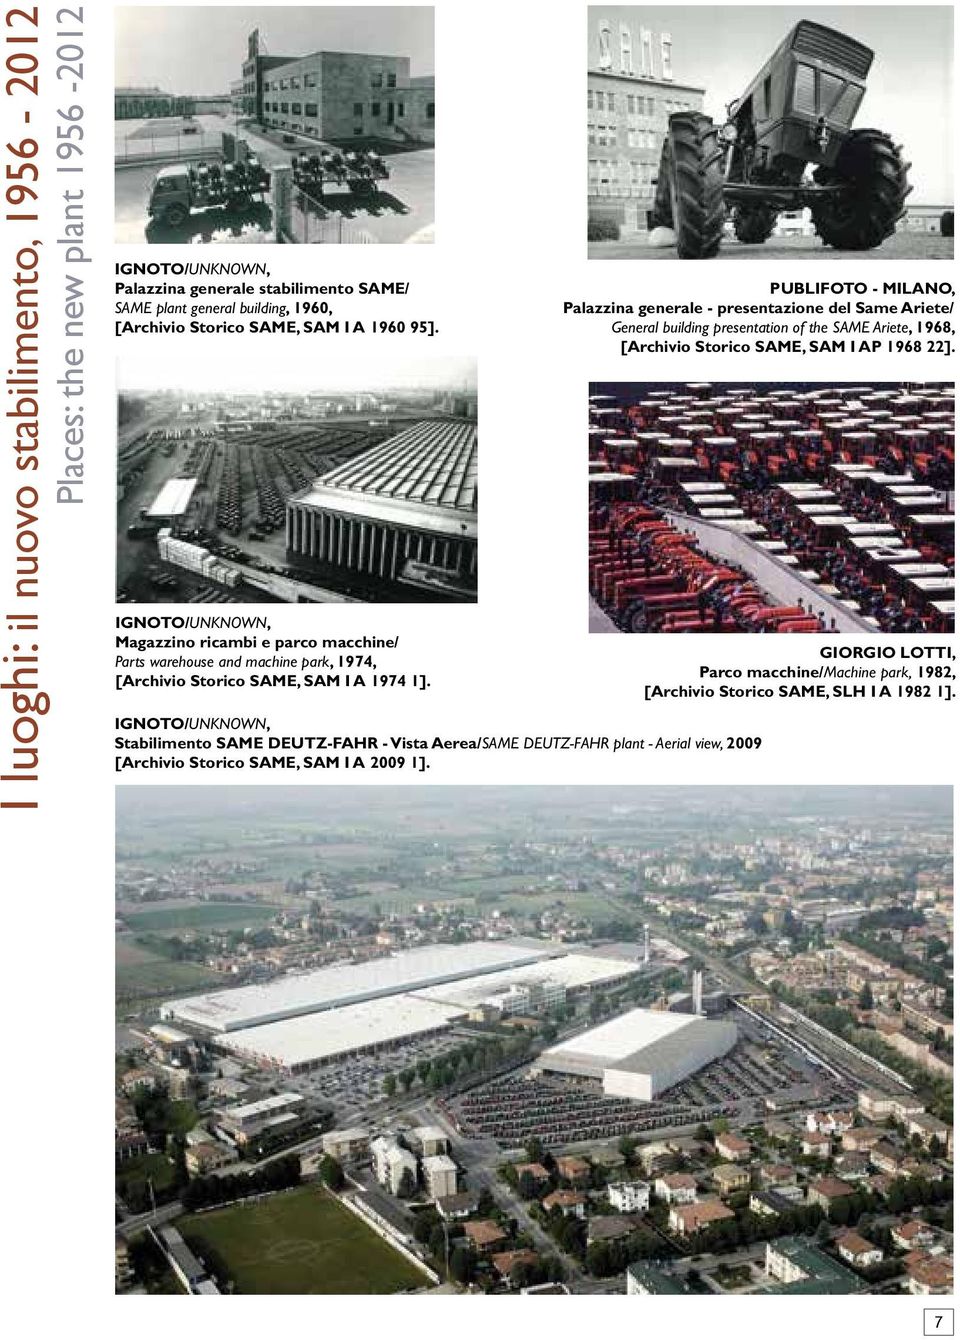 PUBLIFOTO - MILANO, Palazzina generale - presentazione del Same Ariete/ General building presentation of the SAME Ariete, 1968, [Archivio Storico SAME, SAM I AP 1968 22].